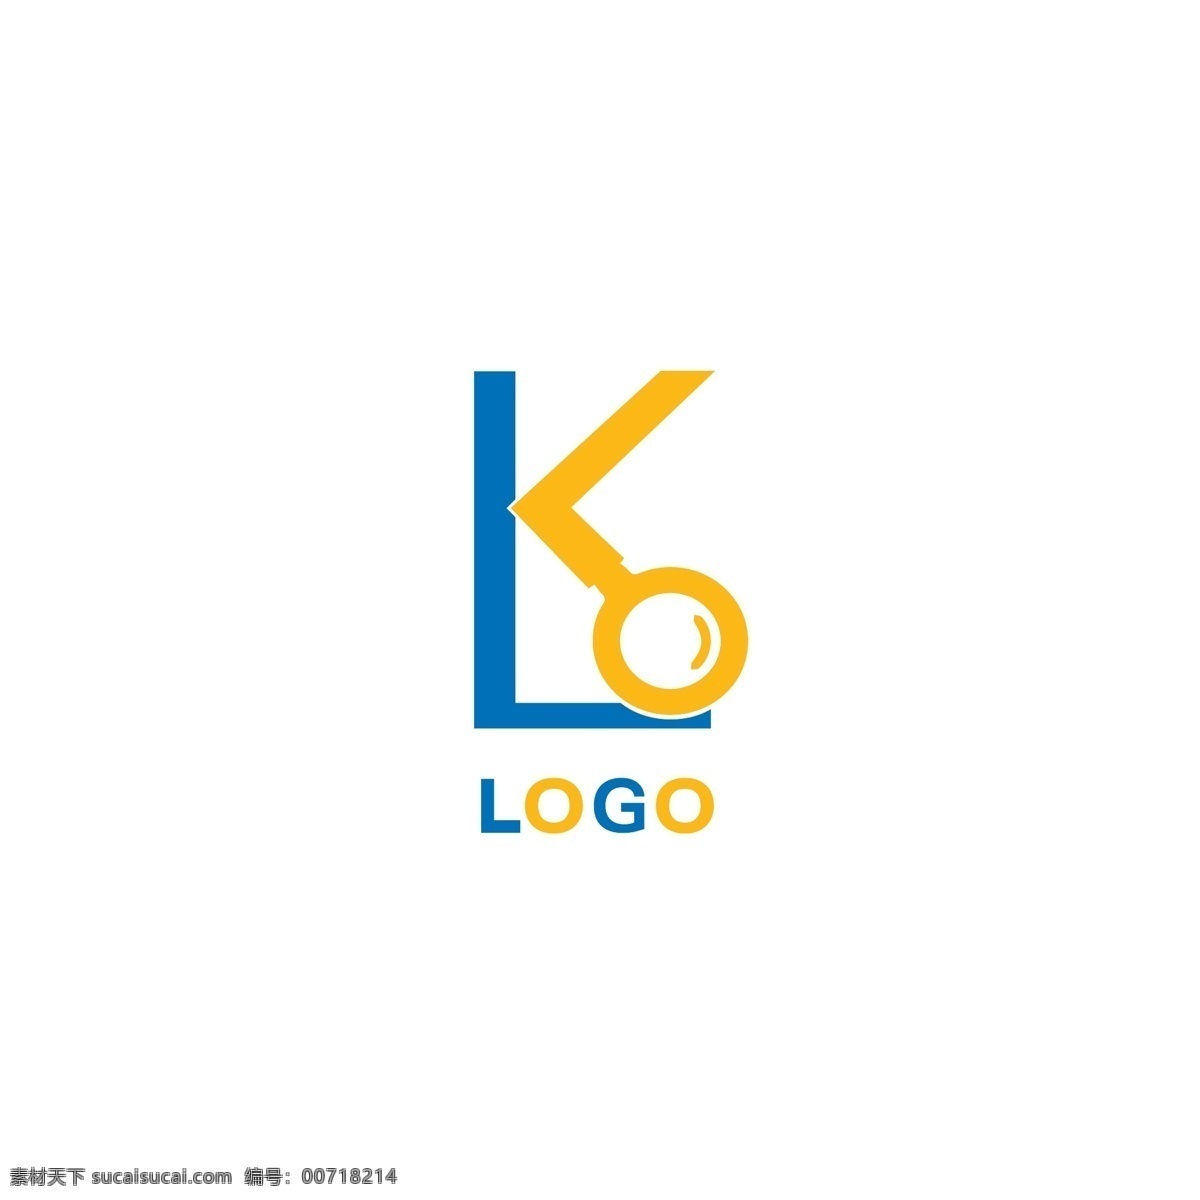 原创 通用 logo 企业 品牌 标识设计 标识 教育 科研 简约 ai矢量